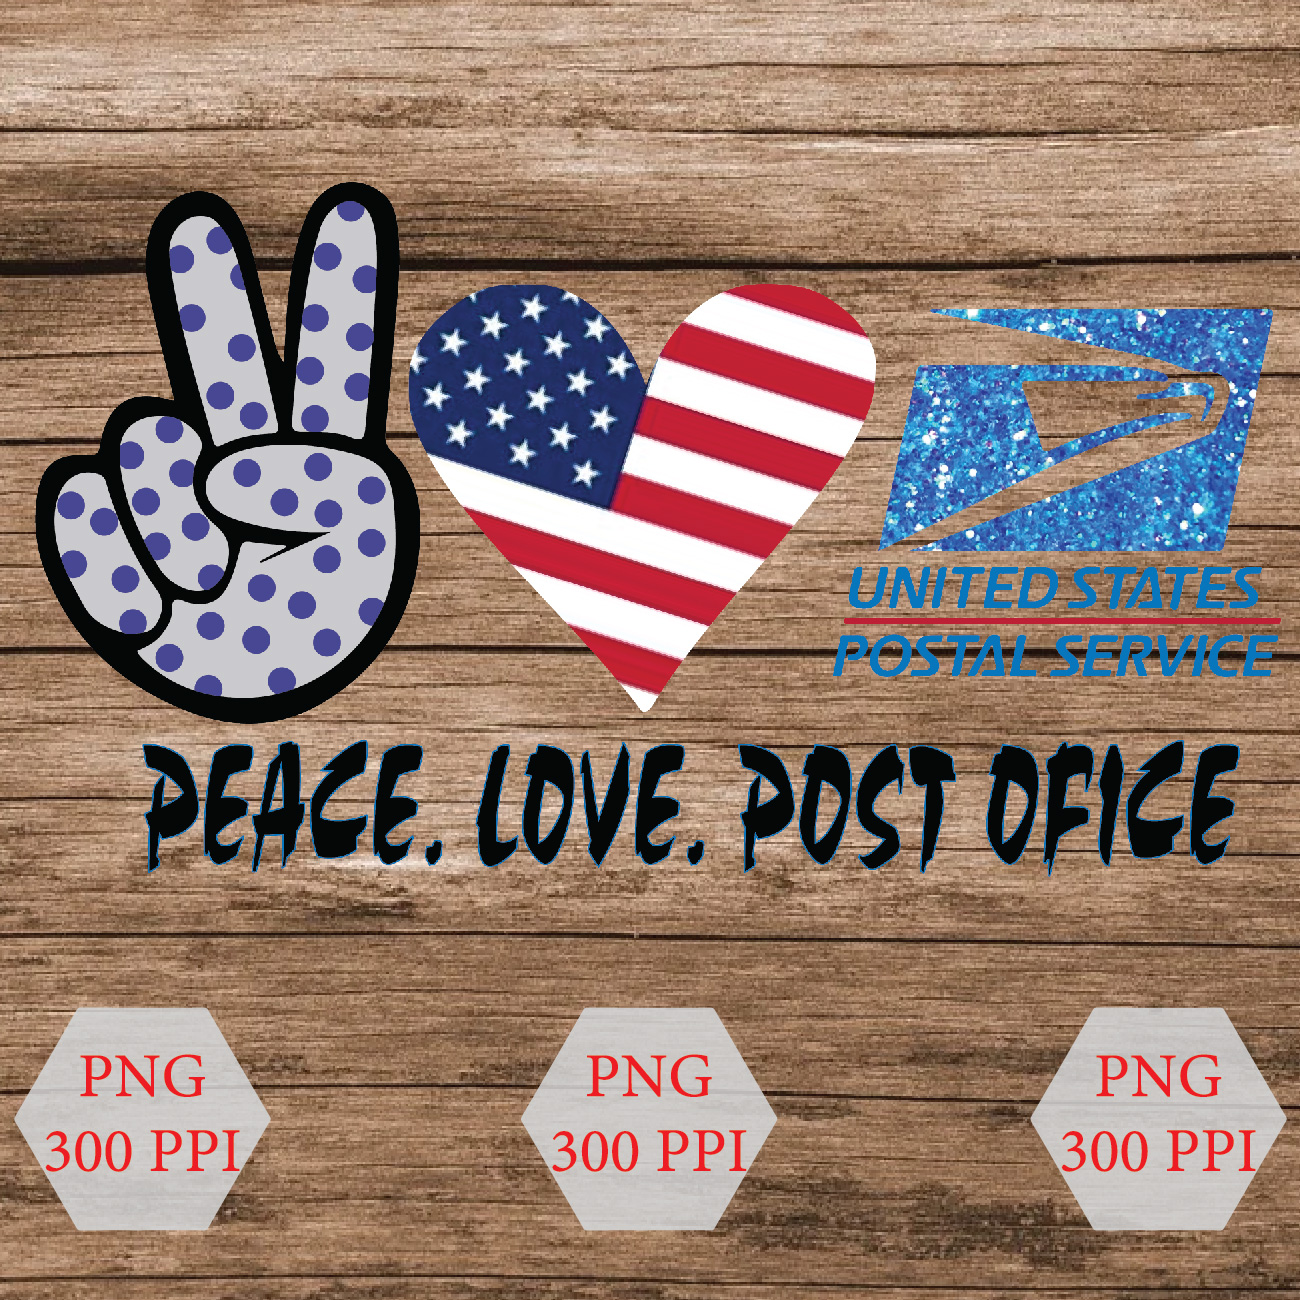 Peace Love Post Office Svg Peace Love Post Office Png Peace Love Post Office Post Office Png Post Office Design Designbtf Com